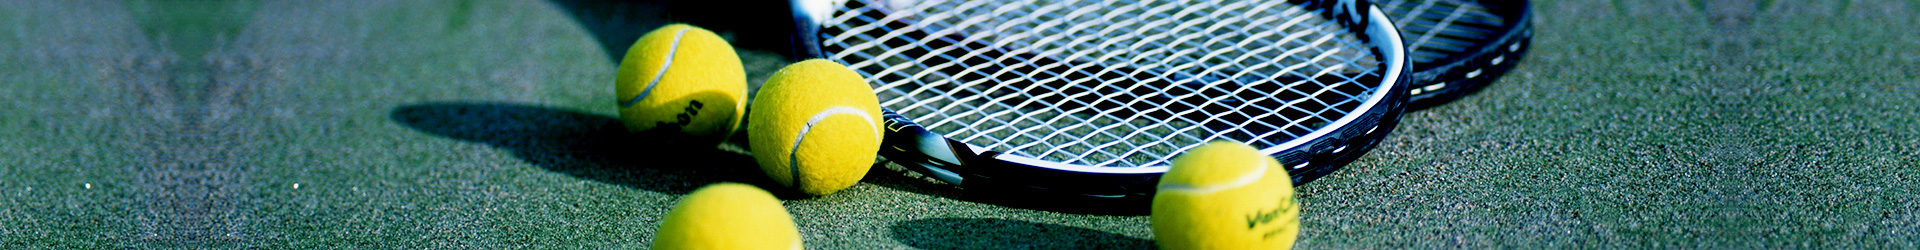 テニスのイメージ画像